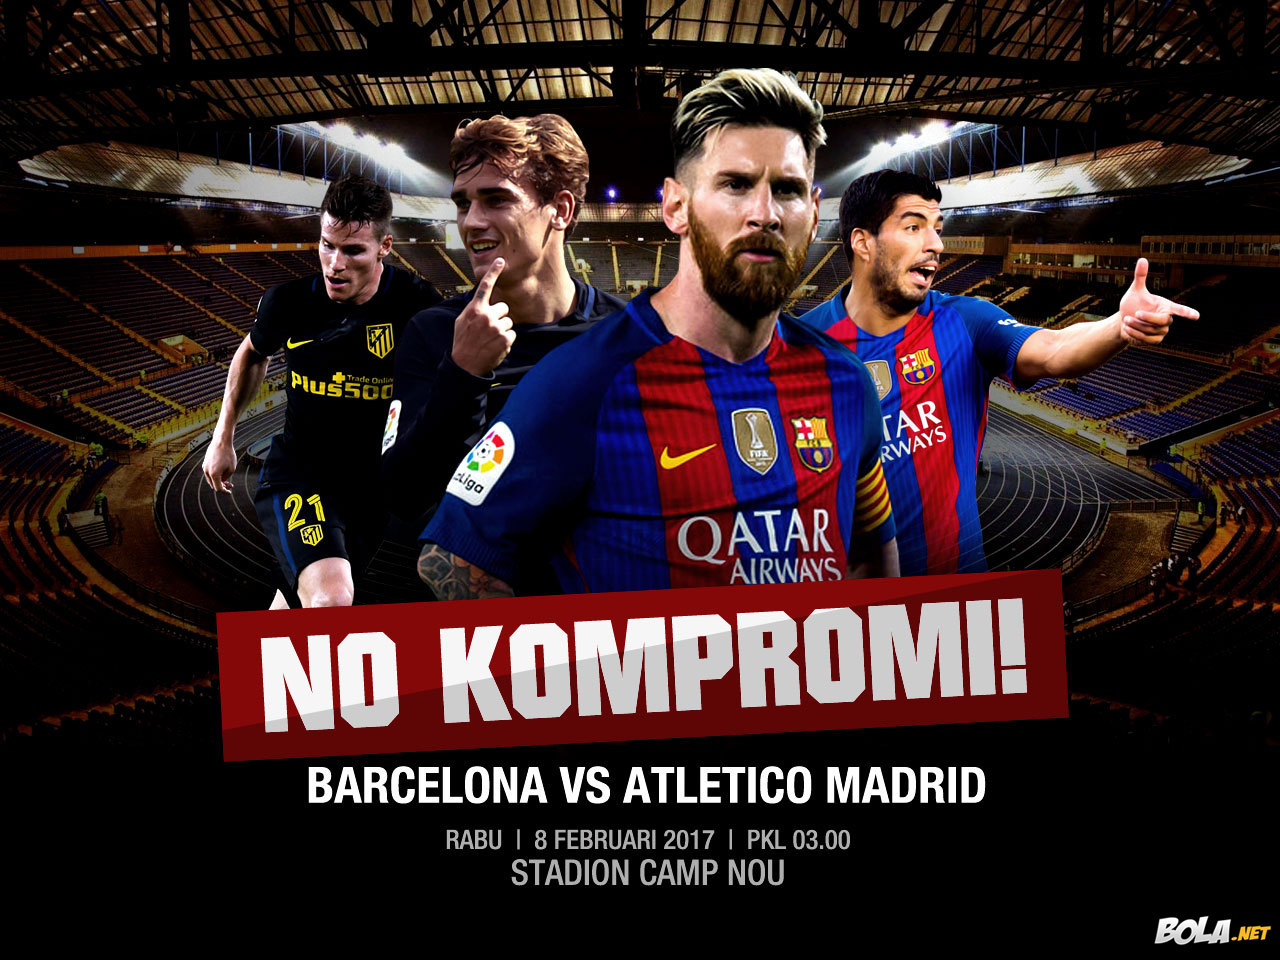 Deskripsi : Wallpaper Barcelona Vs Atletico Madrid, size: 1280x960